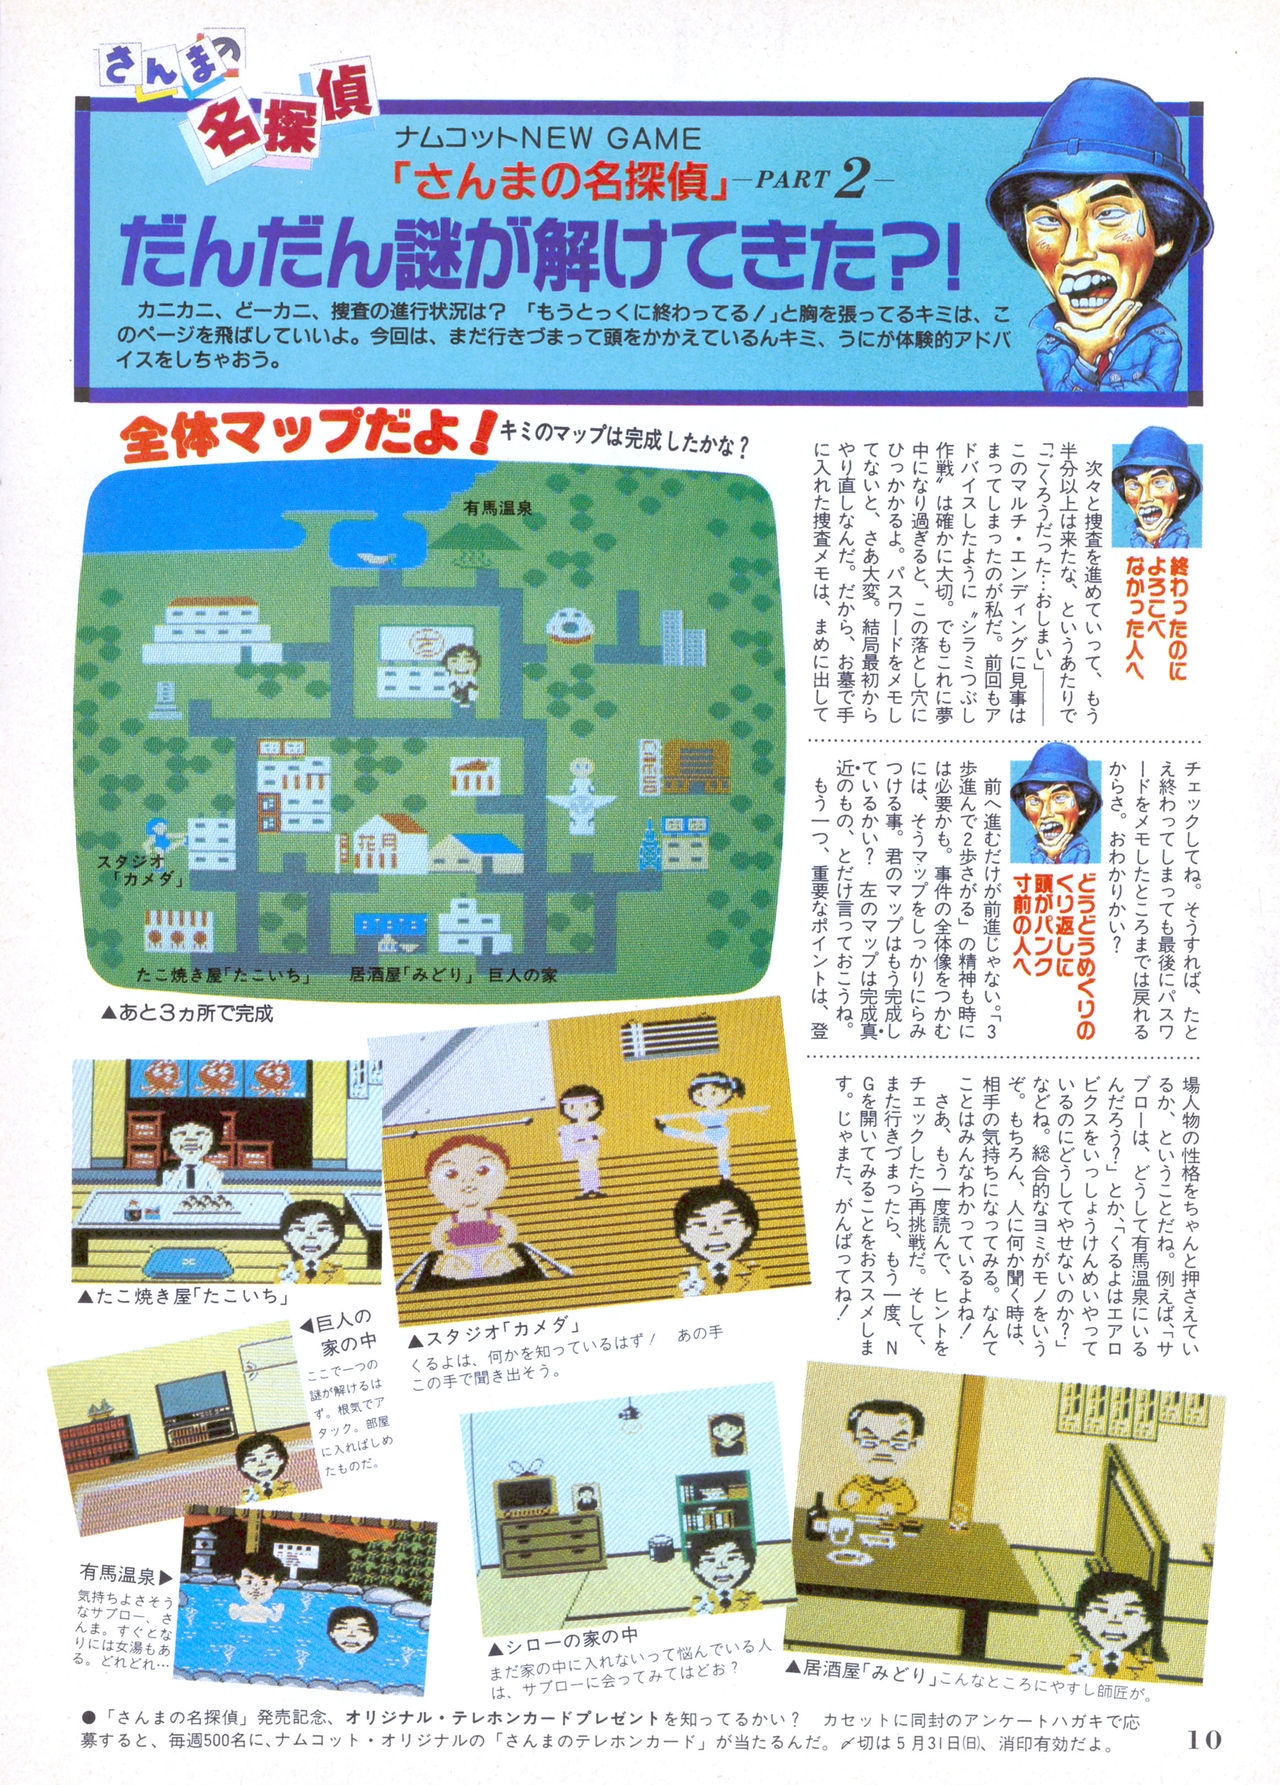 NG Namco Community Magazine 07 9